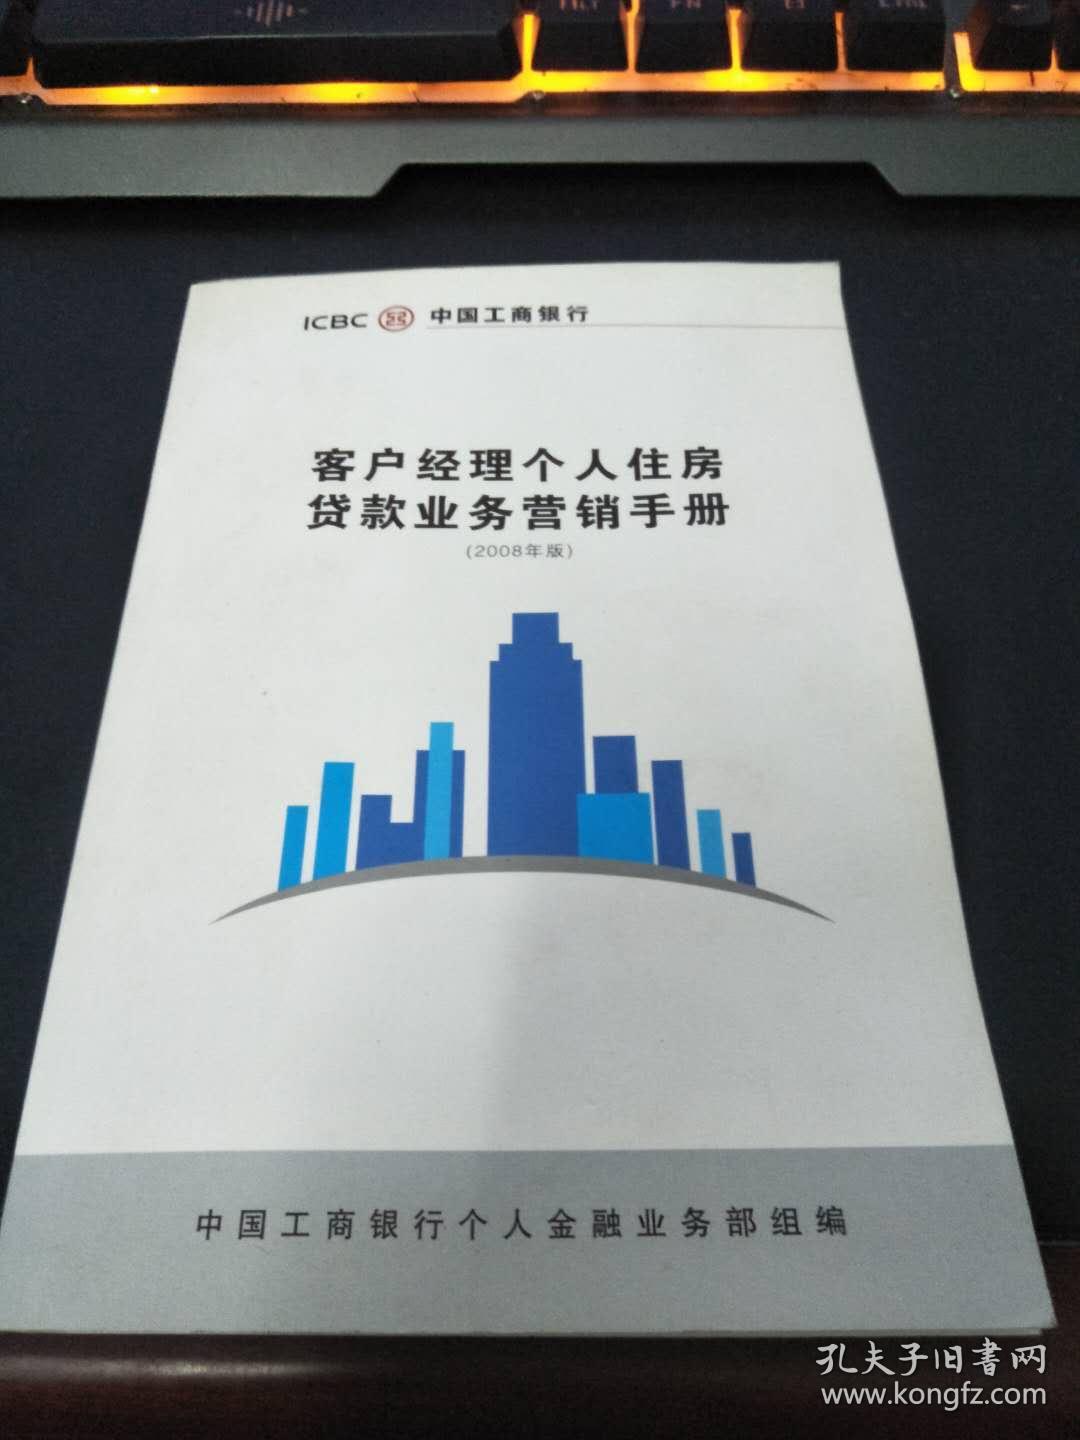 中国工商银行 客户经理个人住房贷款业务营销